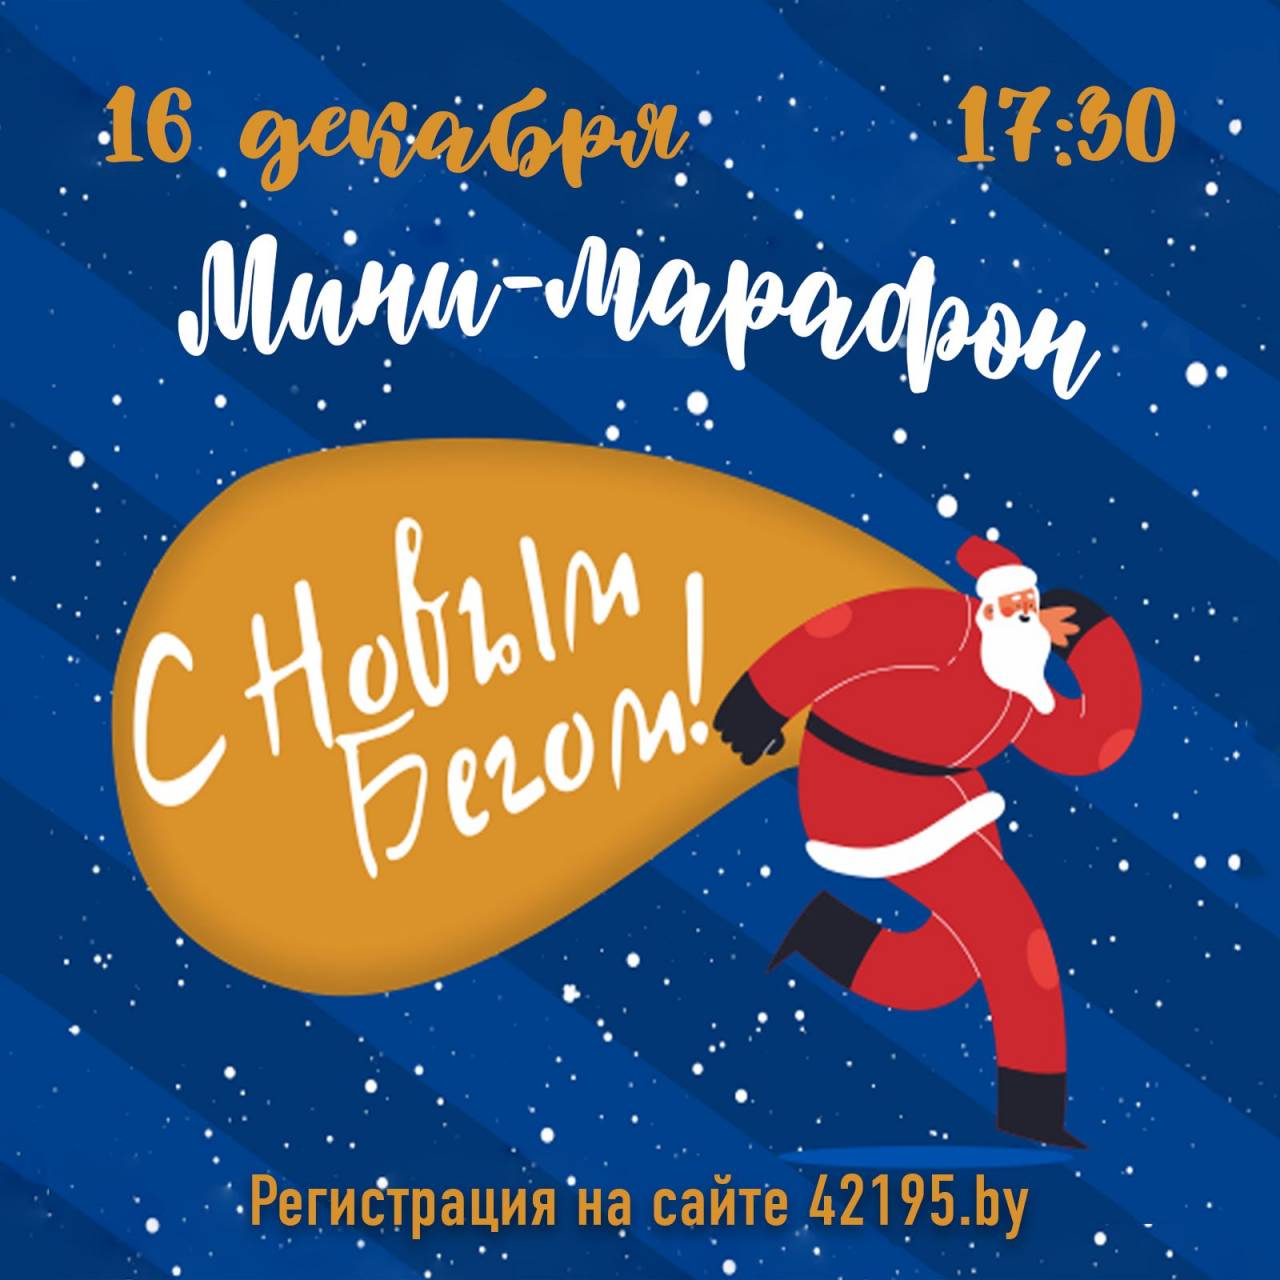 Для любителей бега в Гродно придумали новое развлечение — вечерняя пробежка по залитым новогодними огнями улицам города